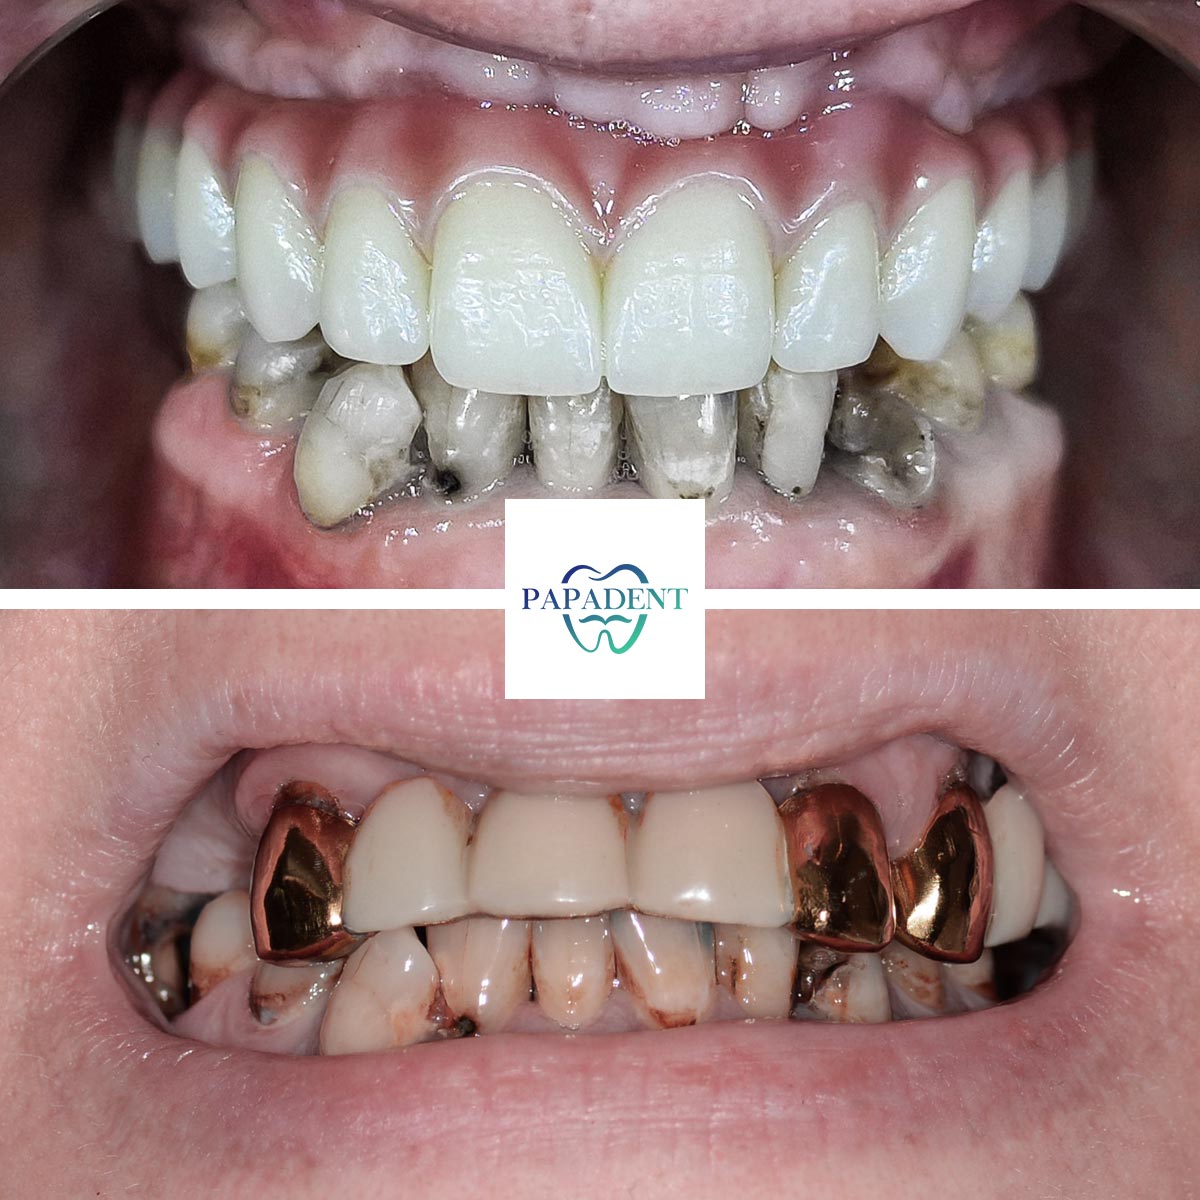 Vitalija - All-on-4 dantų protezai - prieš ir po 1